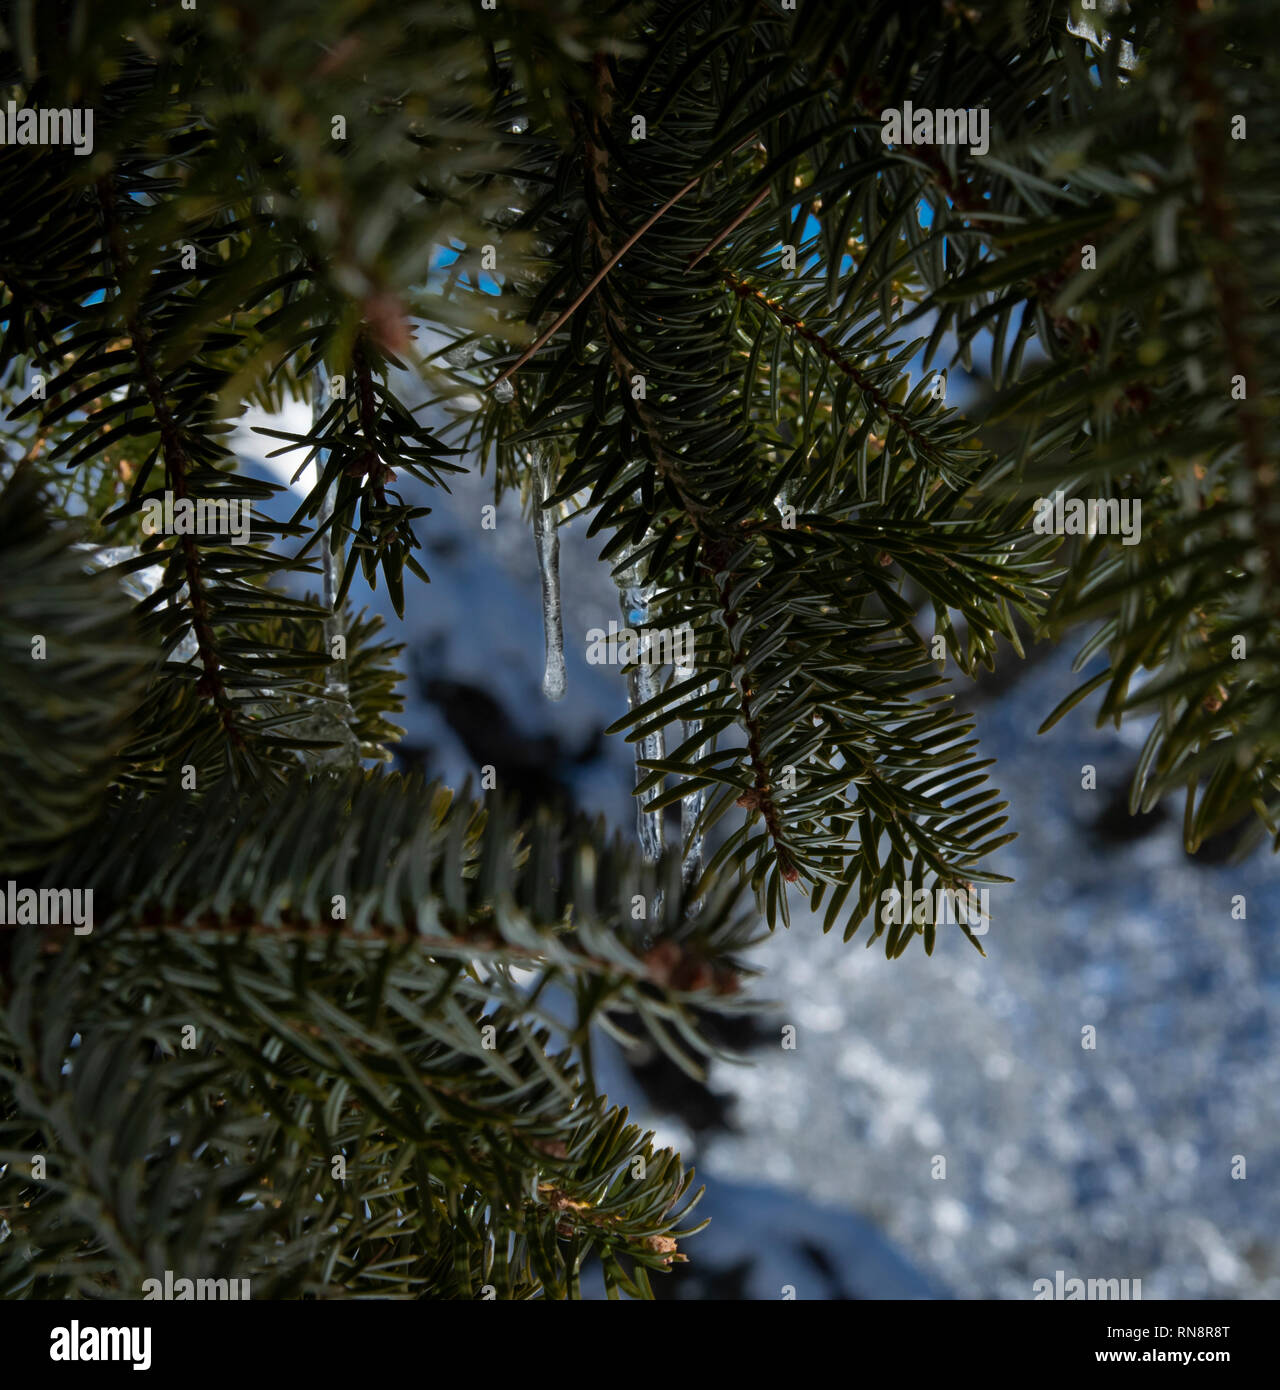 Congelati caduta di pioggia close-up appeso a un ramo di abete. Neve in background al di fuori della messa a fuoco Foto Stock